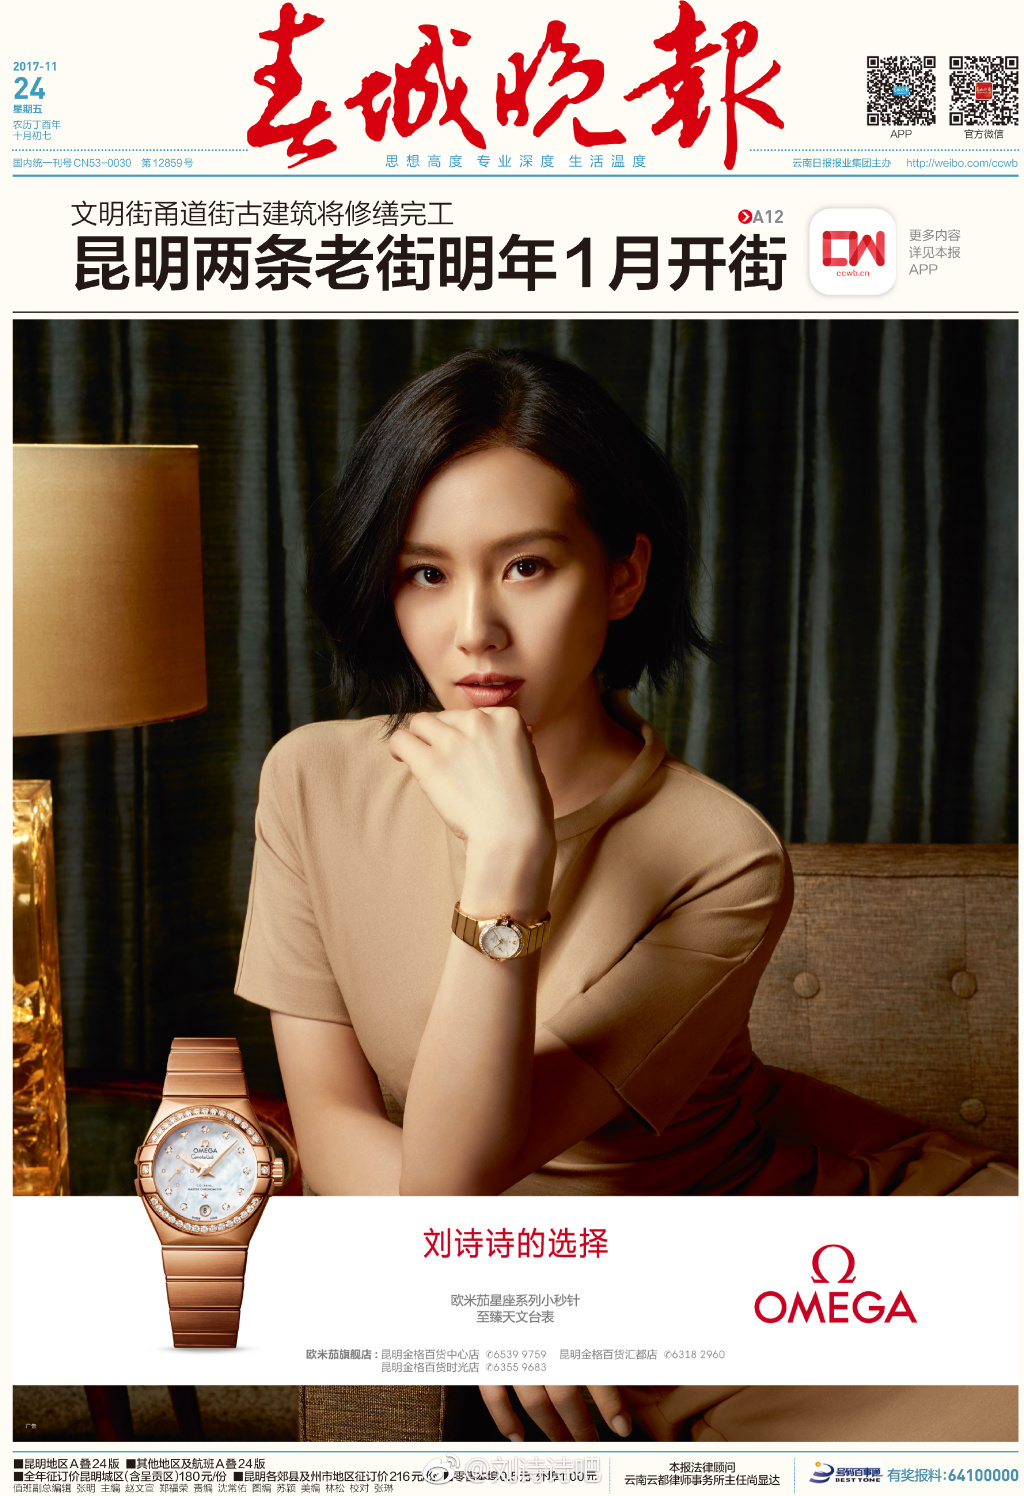 2、刘诗诗最近有你你代言了一个手表品牌？是欧米茄吗？ 